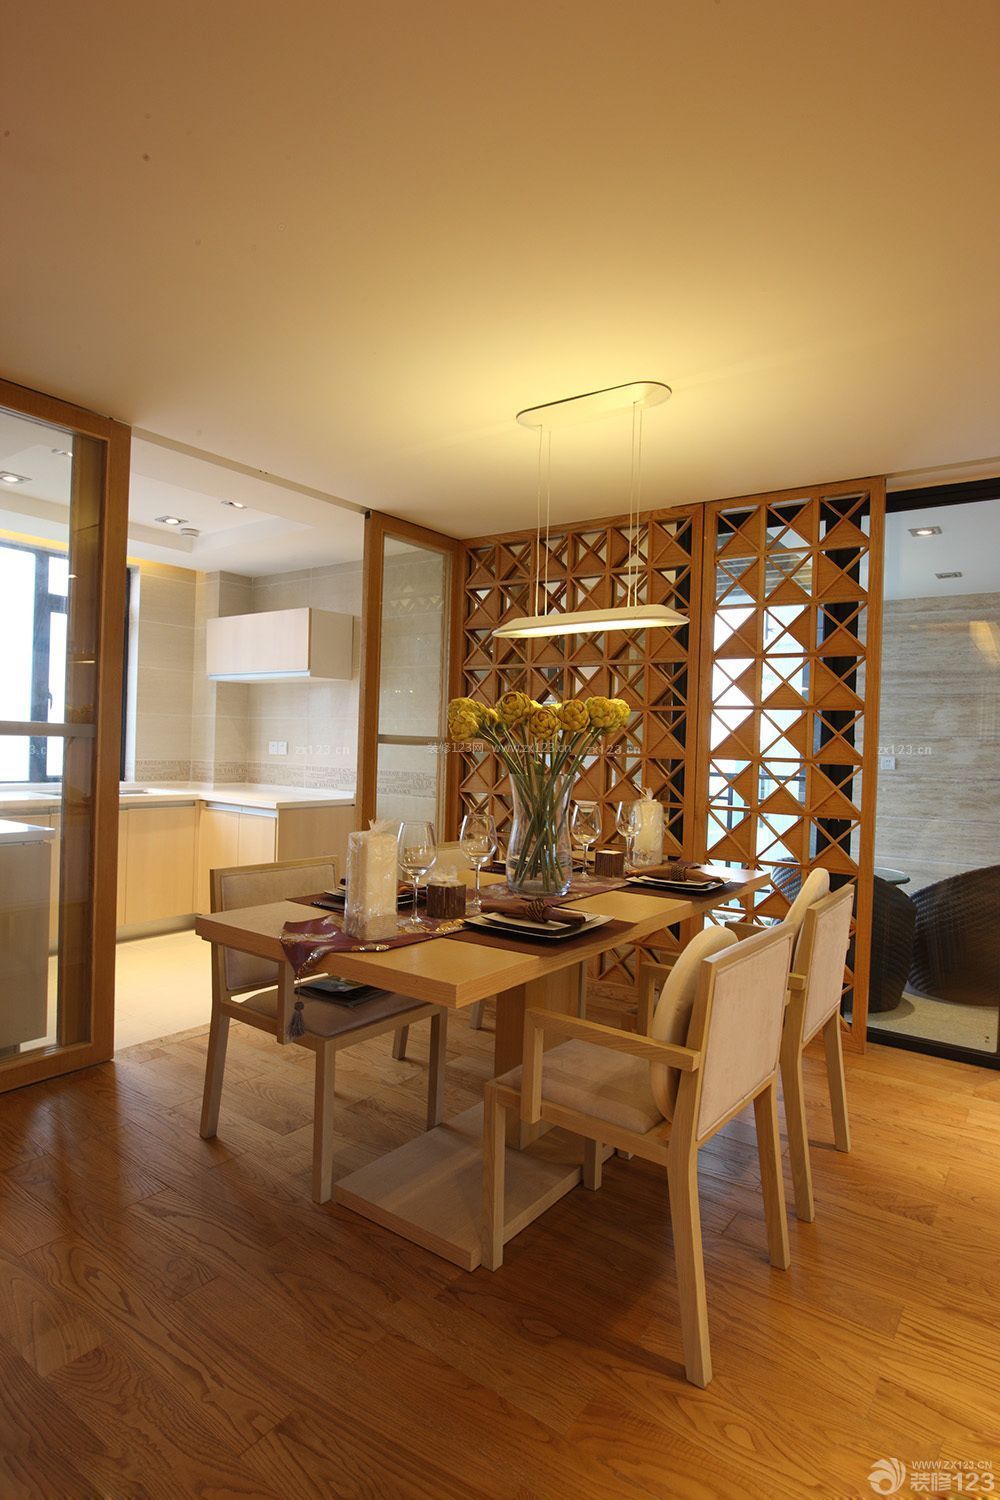 经典家庭餐厅现代风格实木家具设计效果图